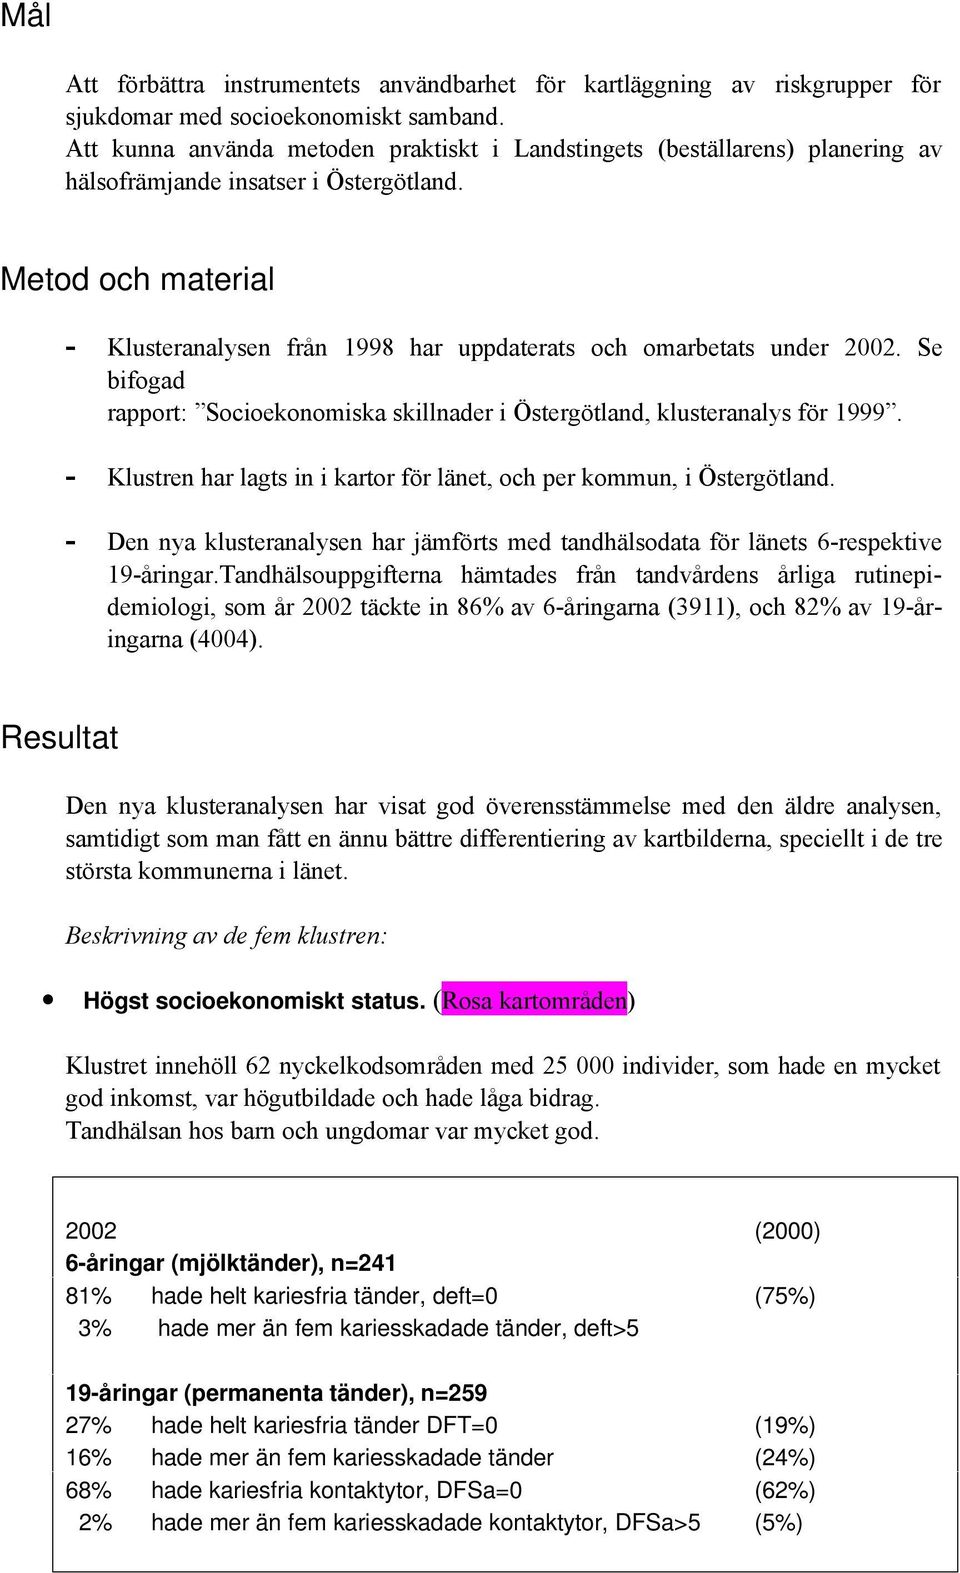 Metod och material - Klusteranalysen från 1998 har uppdaterats och omarbetats under 2002. Se bifogad rapport: Socioekonomiska skillnader i Östergötland, klusteranalys för 1999.